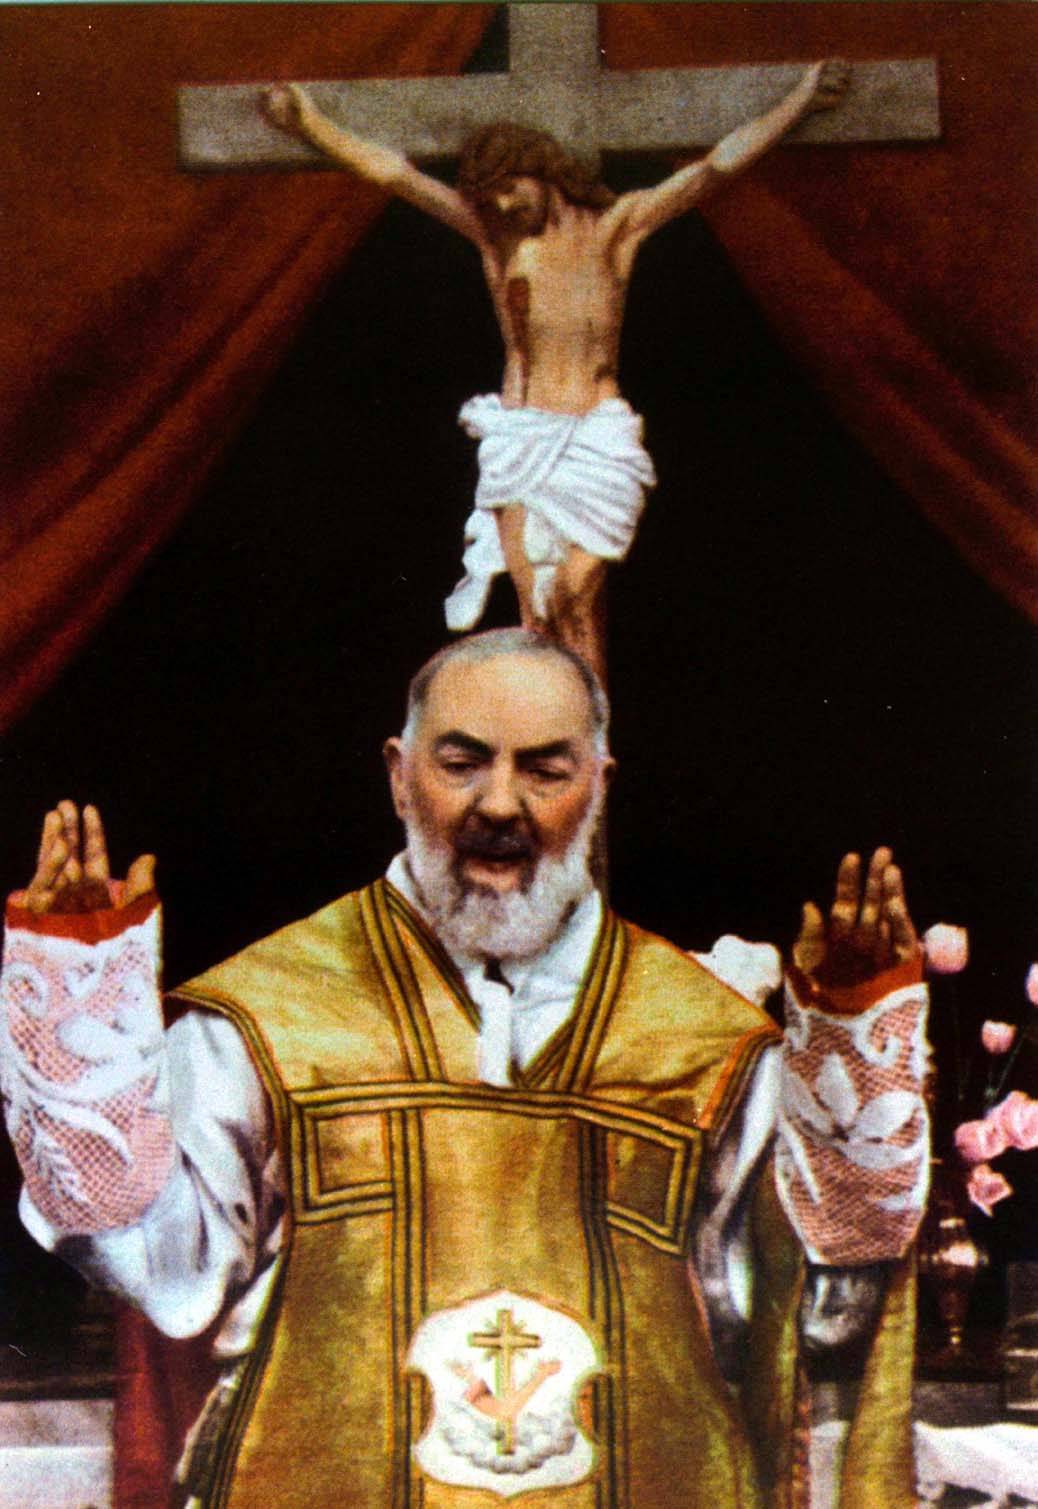 Conte prega Padre Pio: "Aiutami e aiutali Tu altrimenti torno a casa"